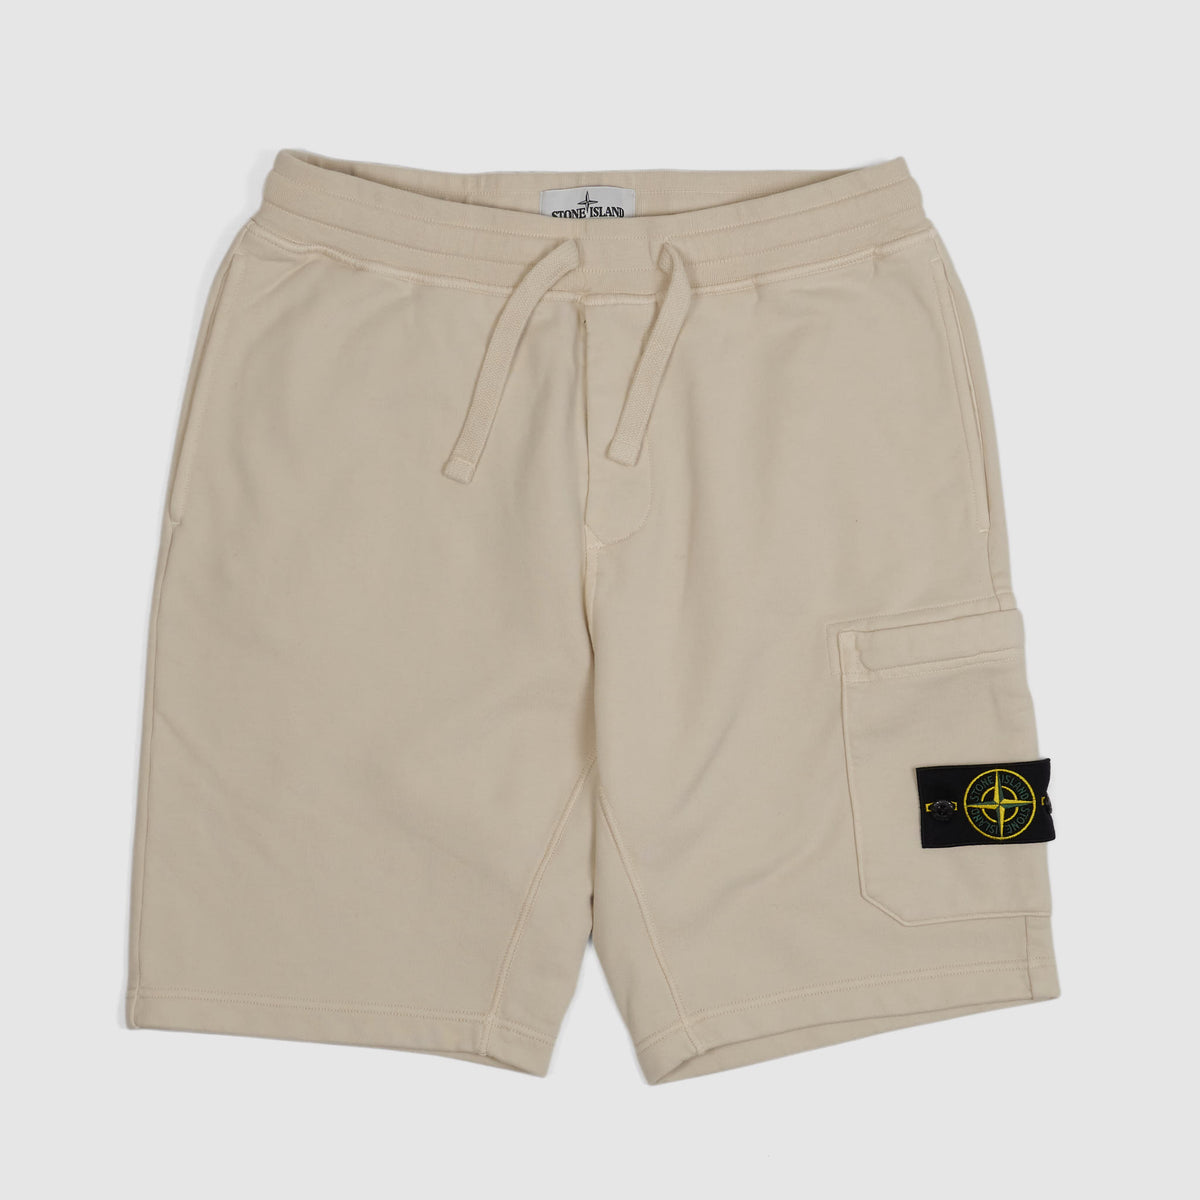 Stone Island Sweat Shorts Cargo Pocket